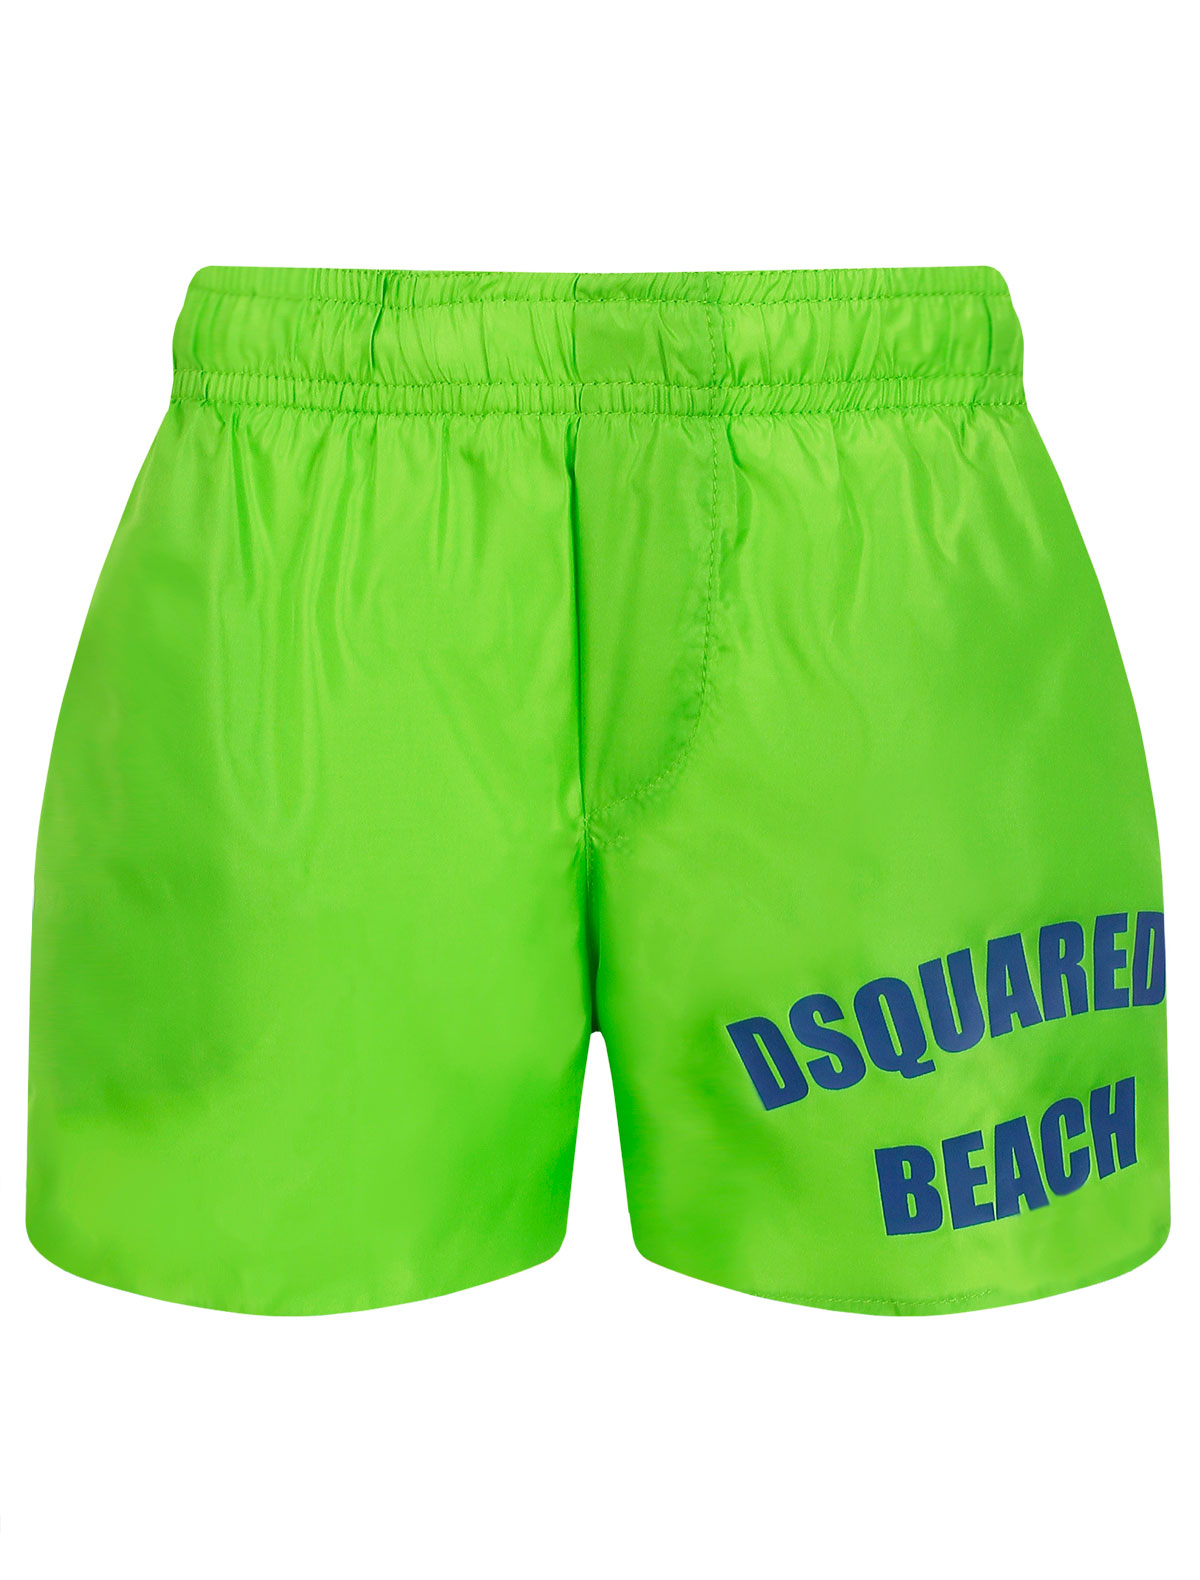 

Шорты пляжные Dsquared2, Зеленый, 2670639